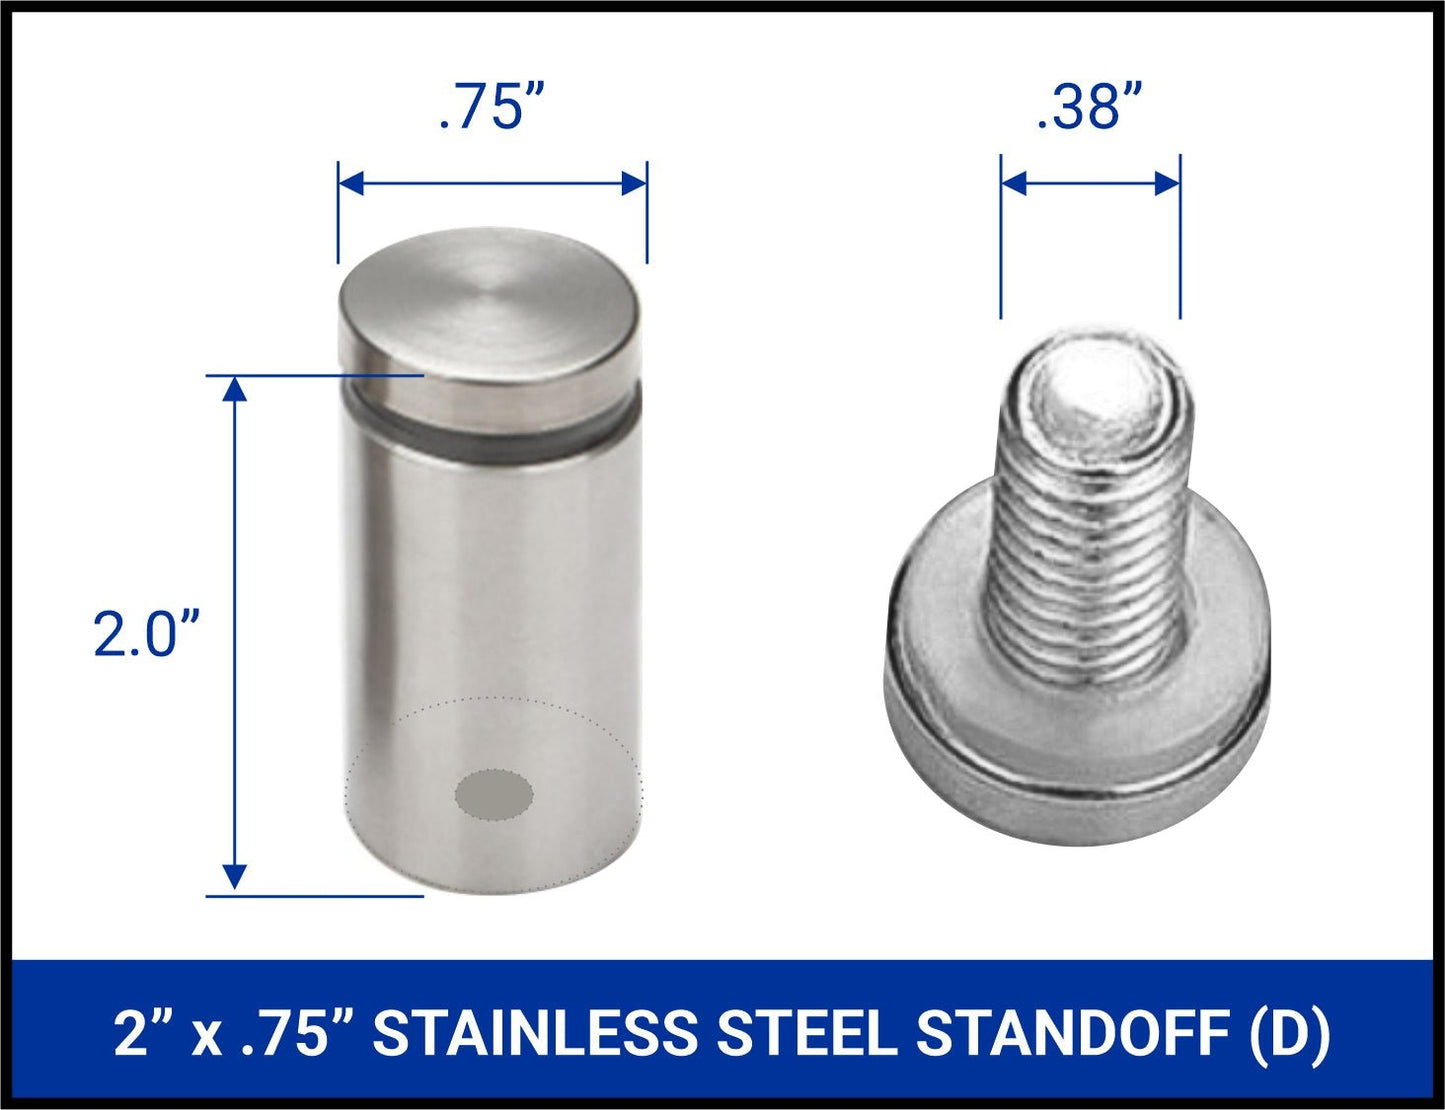 Stainless Steel Standoffs